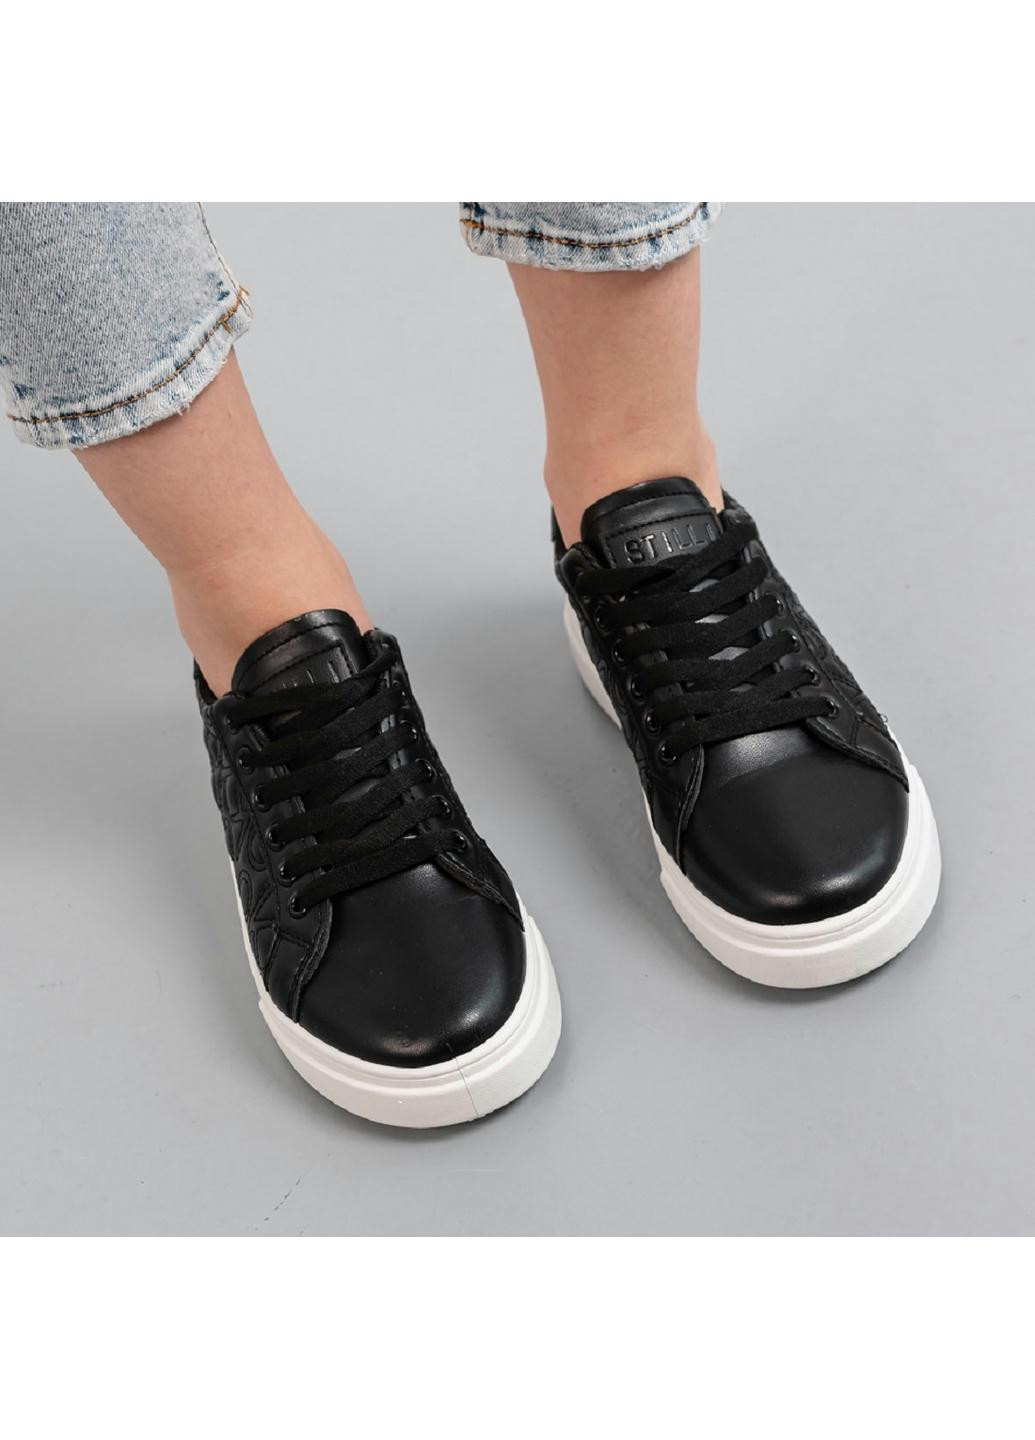 Черные демисезонные кроссовки женские chloe 3935 235 черный Fashion